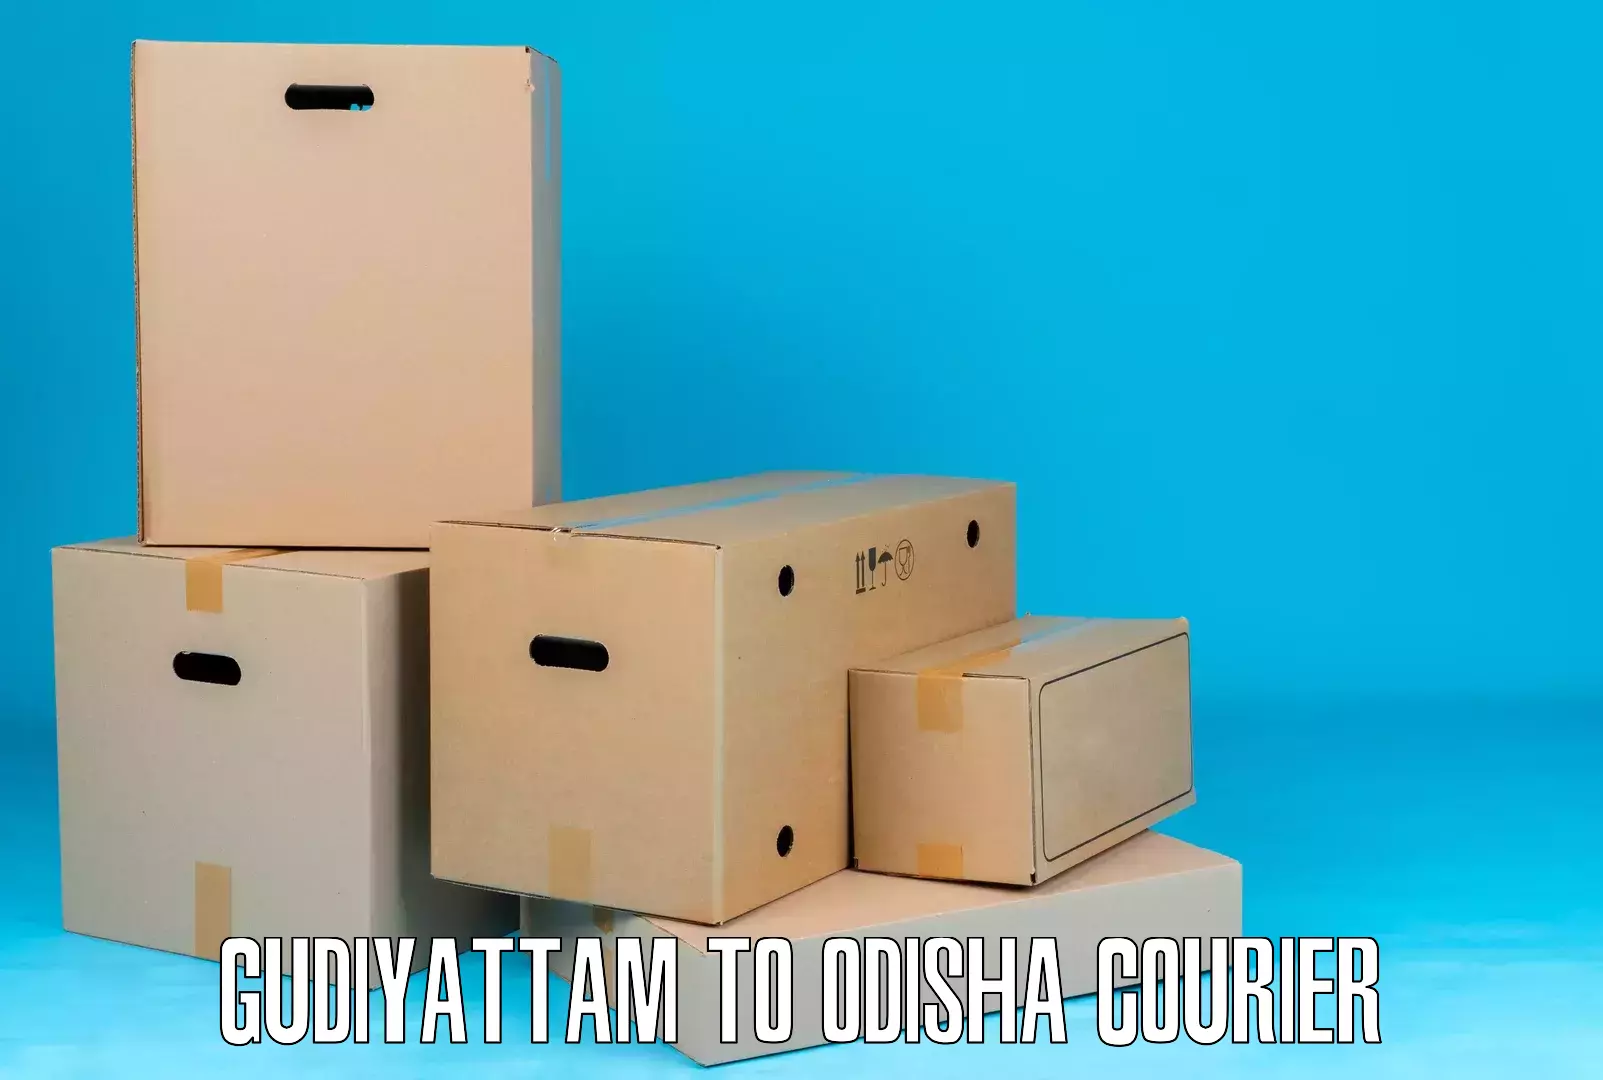 Door-to-door shipment Gudiyattam to Kantabanji